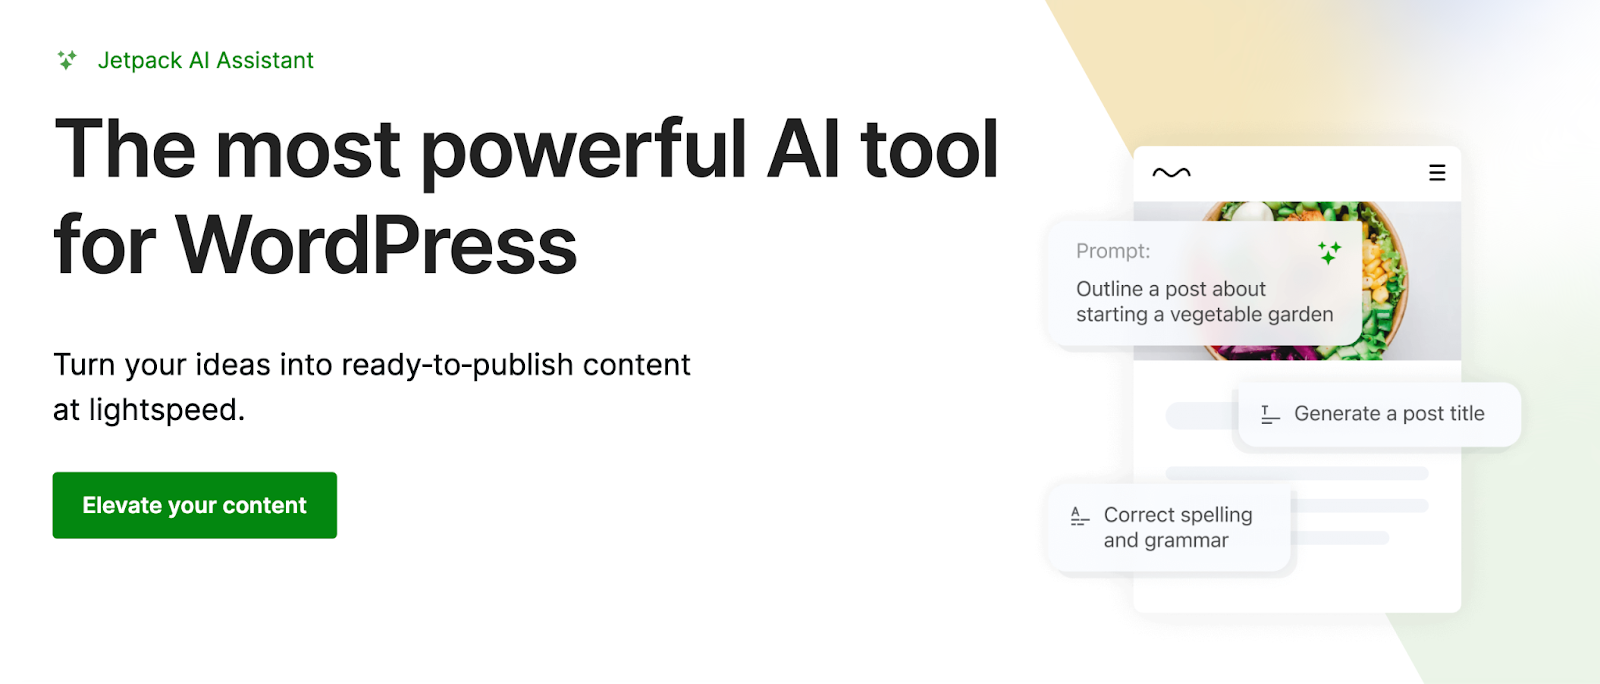 L'assistant Jetpack AI vous permet de passer d'une idée à un contenu de haute qualité en quelques minutes, ce qui en fait l'un des plugins d'IA les plus puissants et les plus utiles pour WordPress.